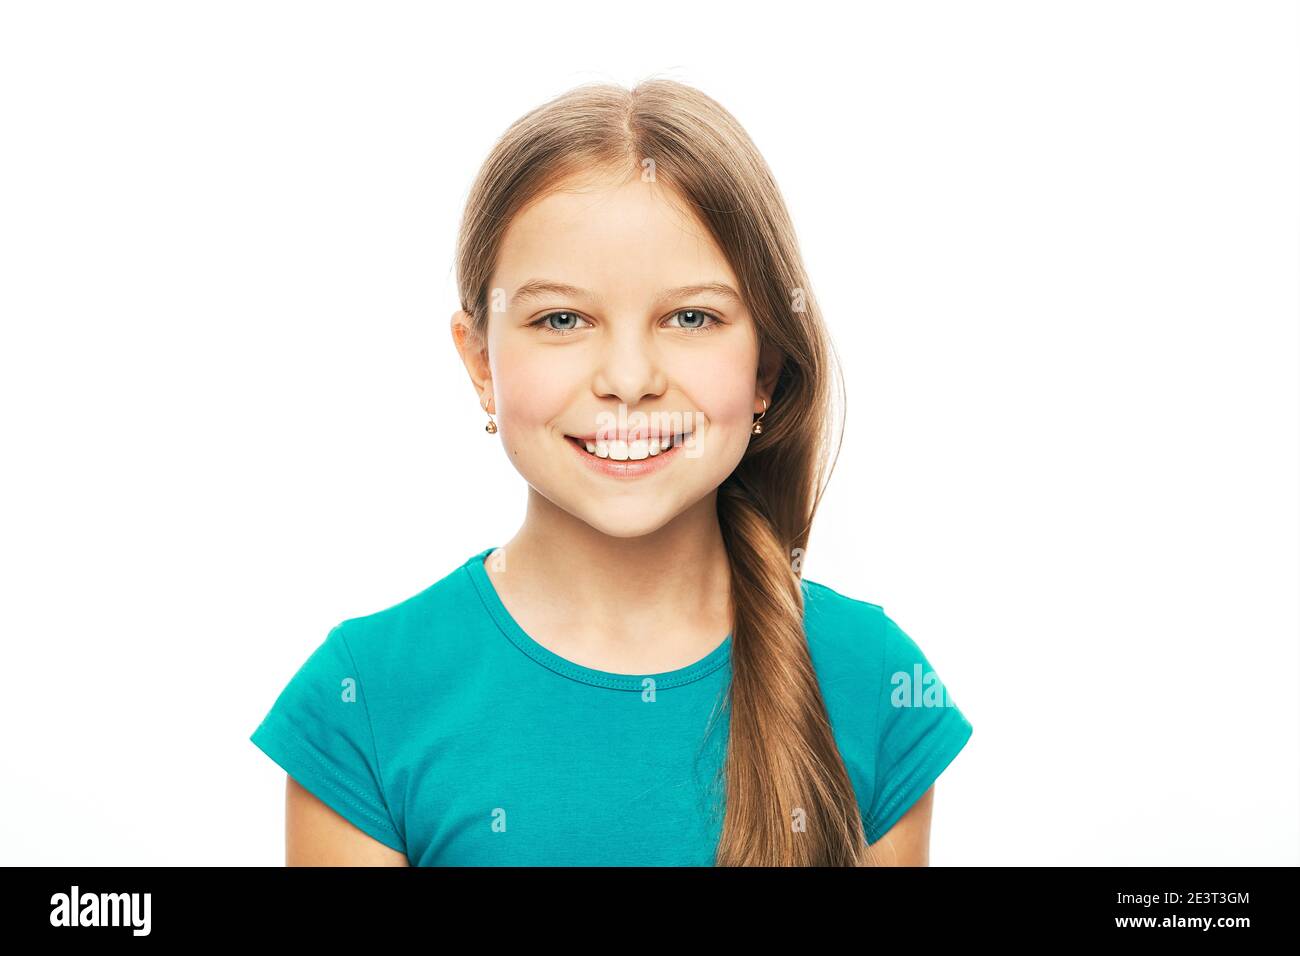 Portrait d'une belle fille caucasienne avec un sourire blanc sain, isolée sur fond blanc. Le sourire crasseux de l'enfant Banque D'Images